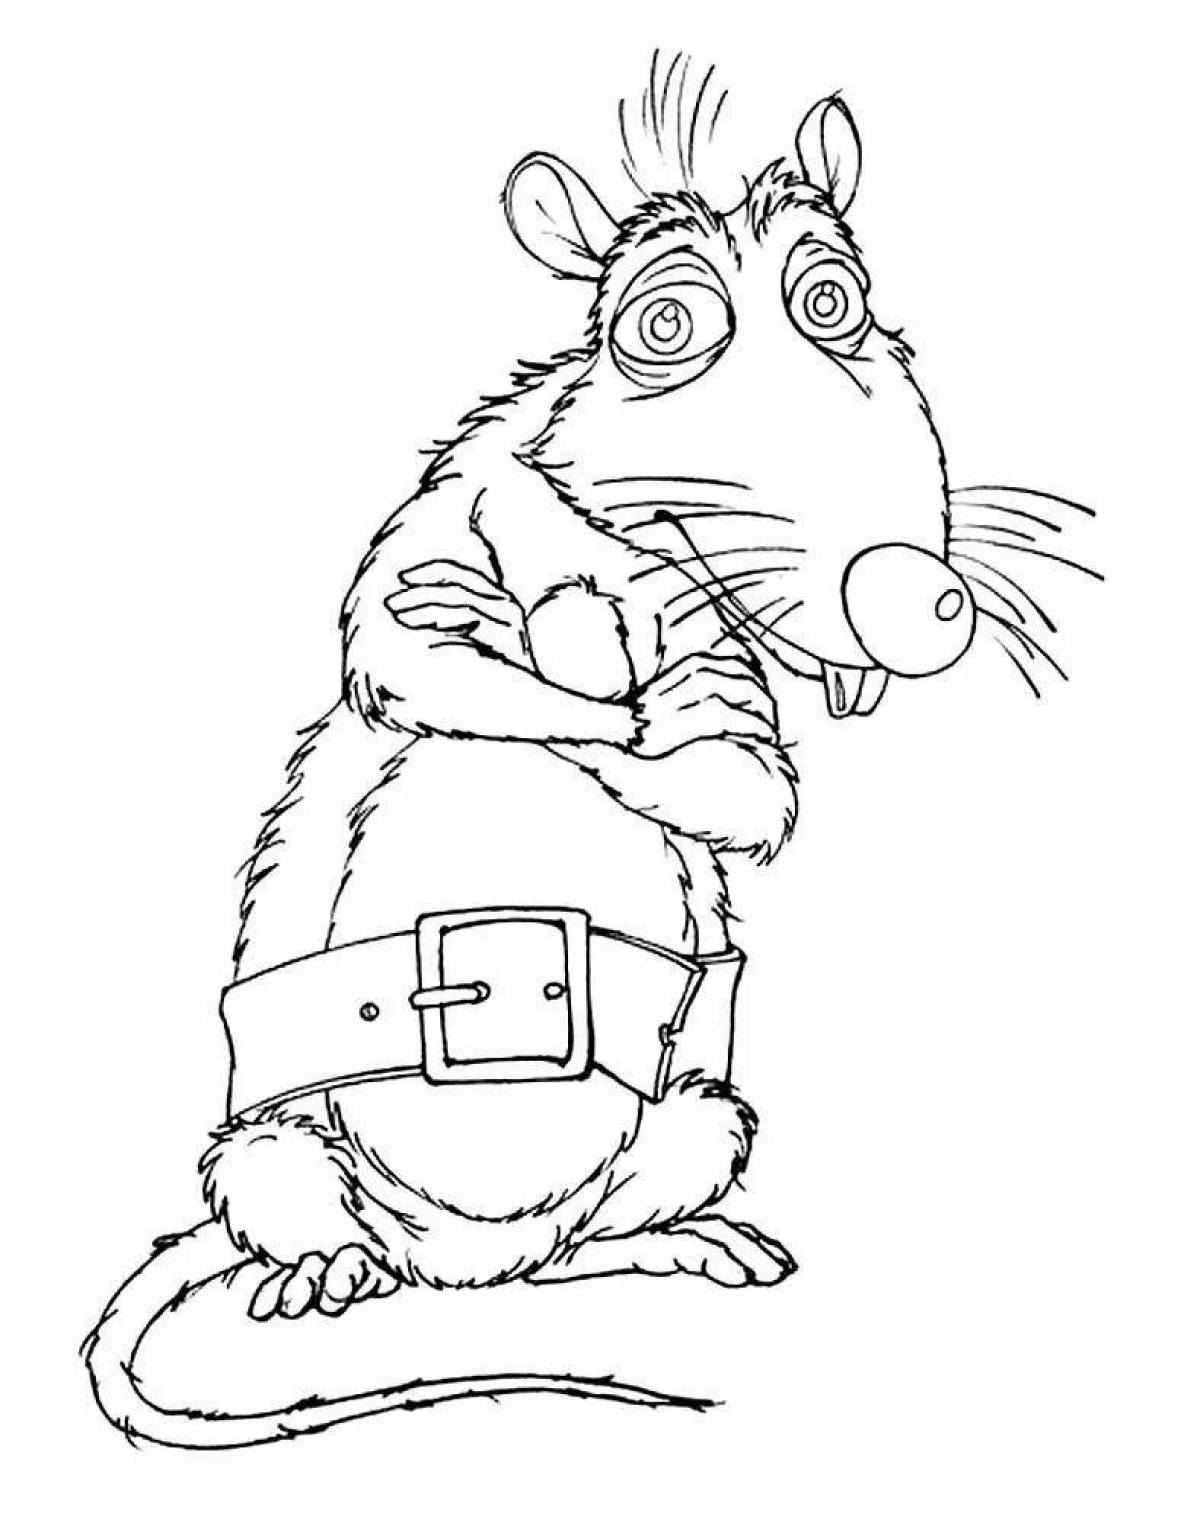 Rat for kids #3